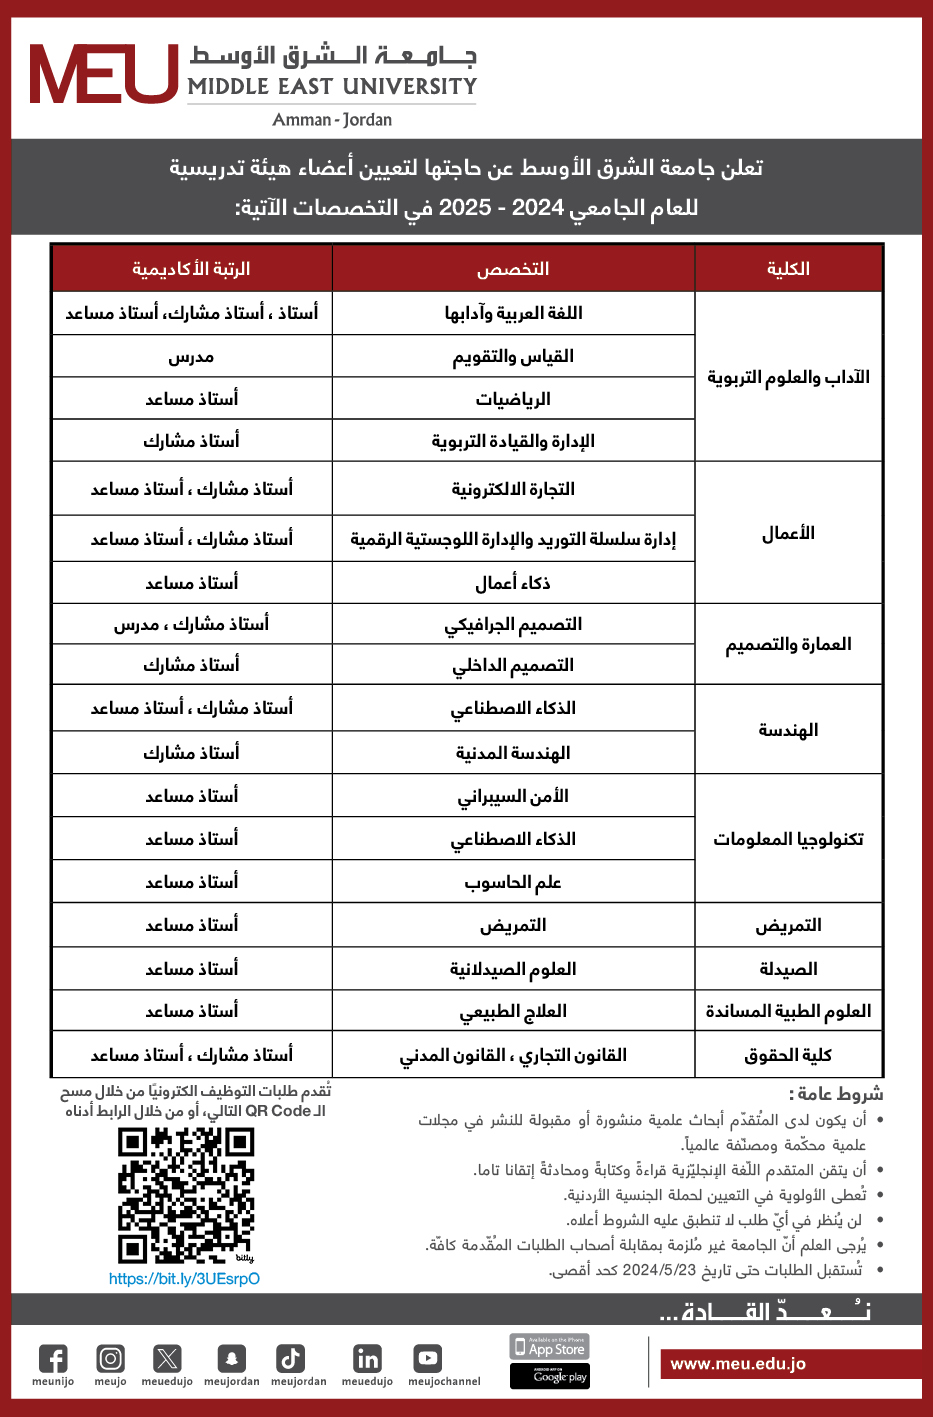 جامعة الشرق الأوسط تعلن حاجتها لتعيين اعضاء هيئة تدريس في عدة تخصصات - تفاصيل